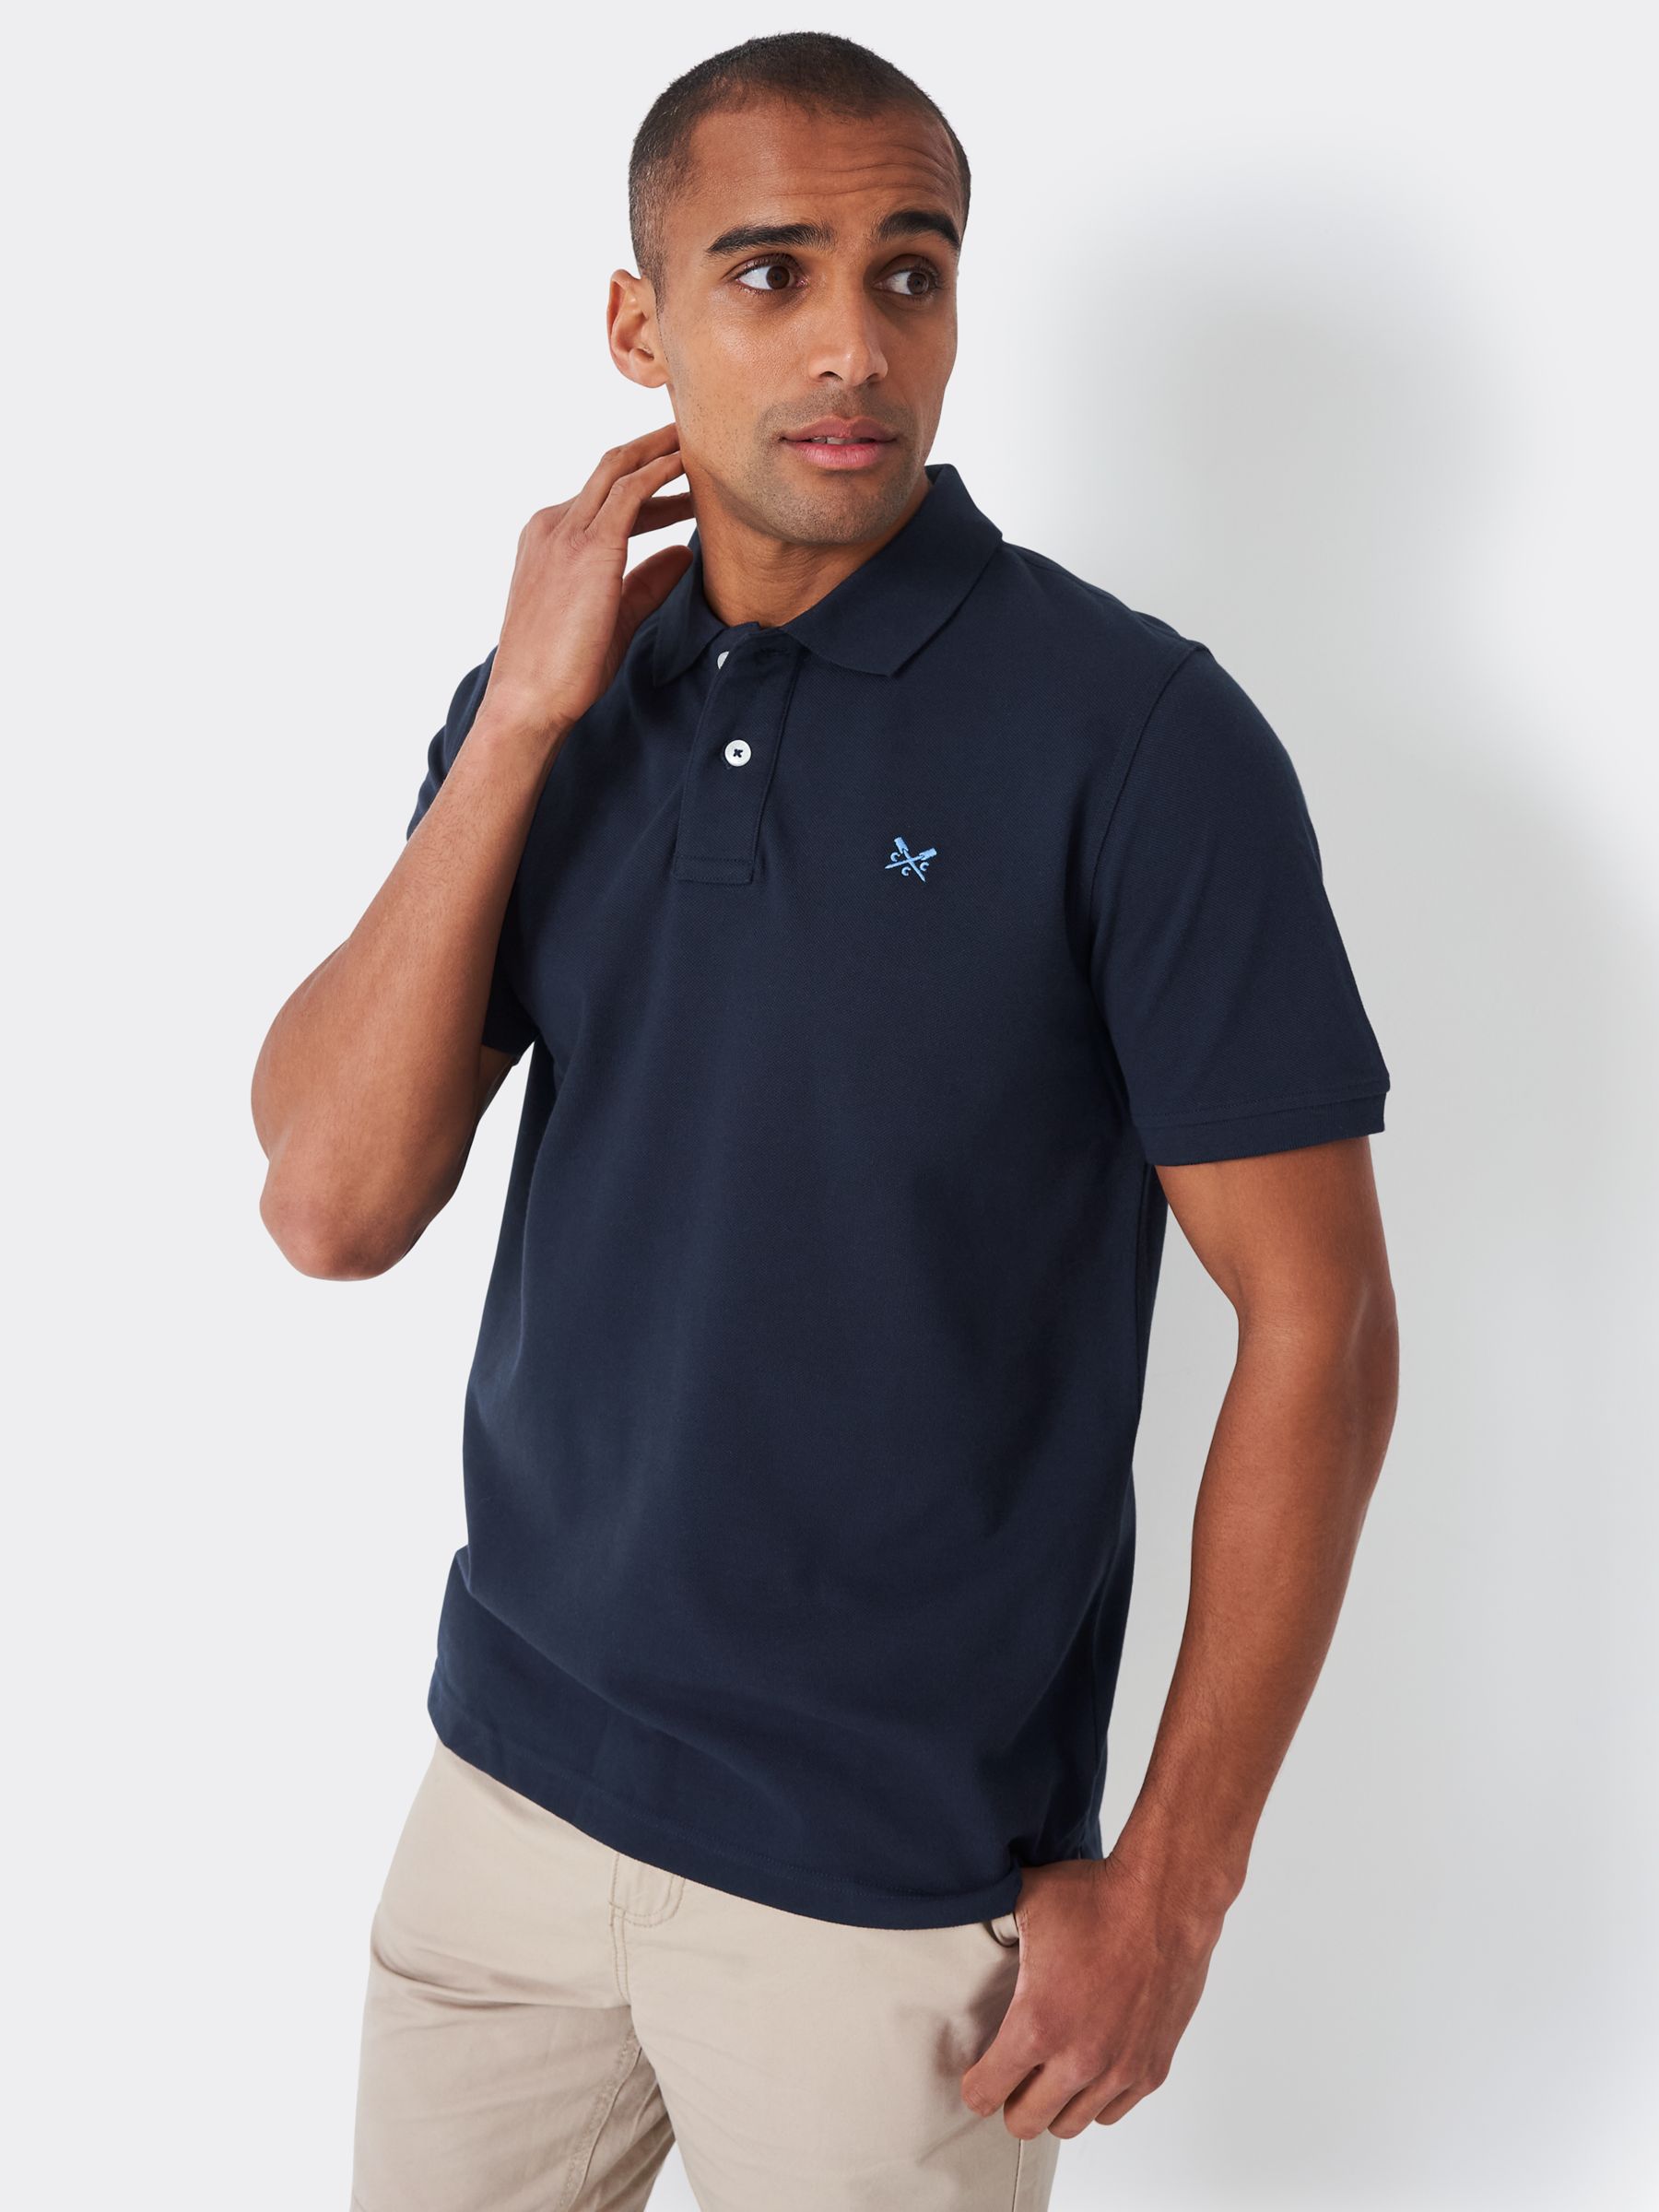 Crew Clothing Ocean Organic Cotton Pique Short Sleeve Polo Top, Navy, XS